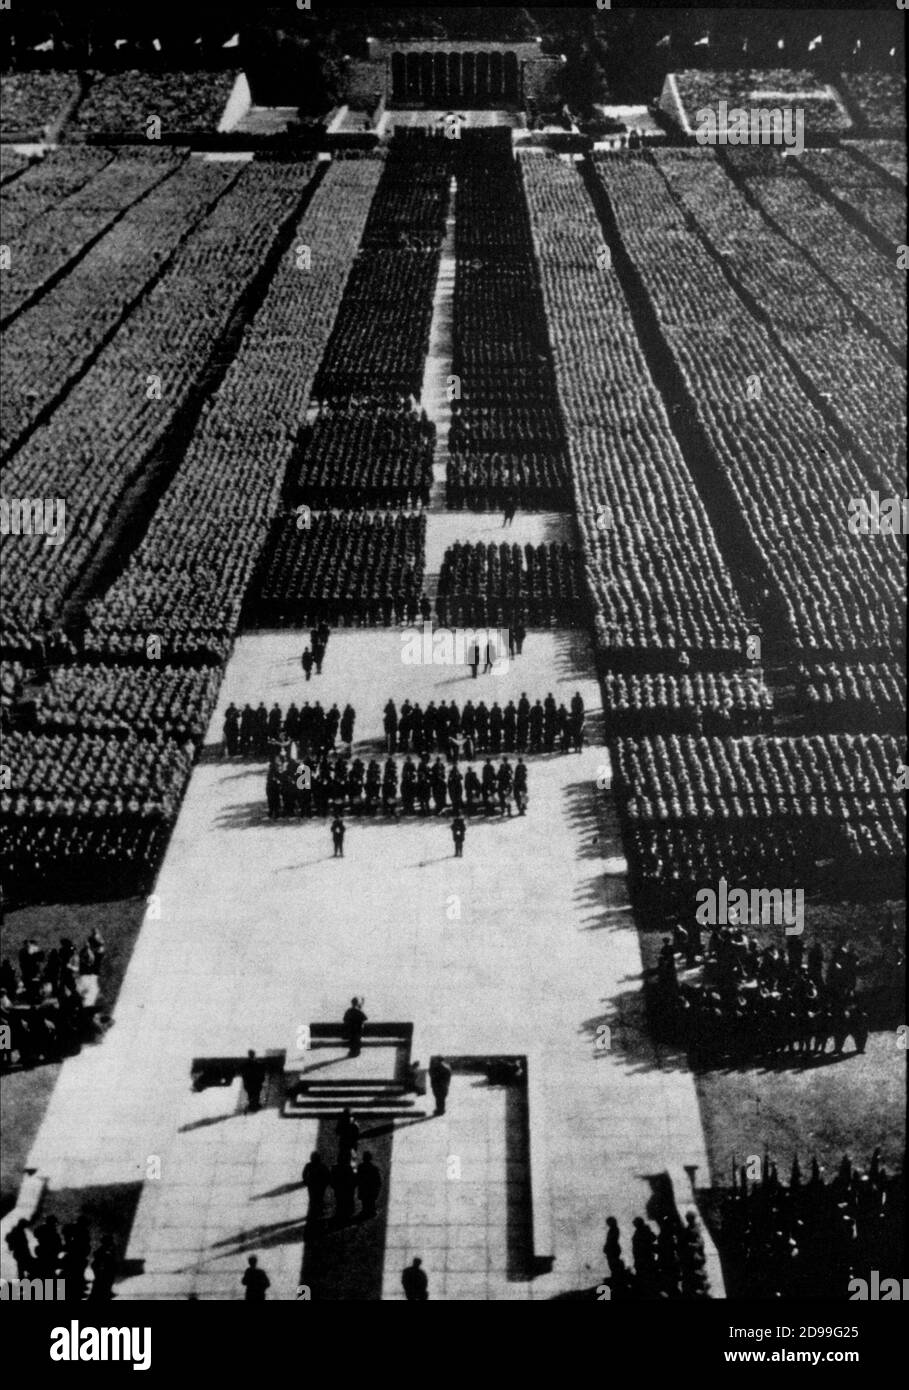 1935, GERMANIA: Publicità ancora dal film TRIUMPH DES WILLENS ( Trionfo della volontà - il trionfo della volontà ) del regista tedesco LENI RIEFENSTAHL (nato a Berlino, 22 agosto 1902 ), Shoting durante il VI raduno del Partito Socialista Nazionale a Nremberg tenutosi dal 4 al 10 settembre 1934 - ADOLF HITLER - seconda guerra mondiale - SECONDA guerra mondiale - NAZISTA - NAZISTA - NAZISTA - NAZISMO - FILM - CINEMA - FILM ------ Archivio GBB Foto Stock